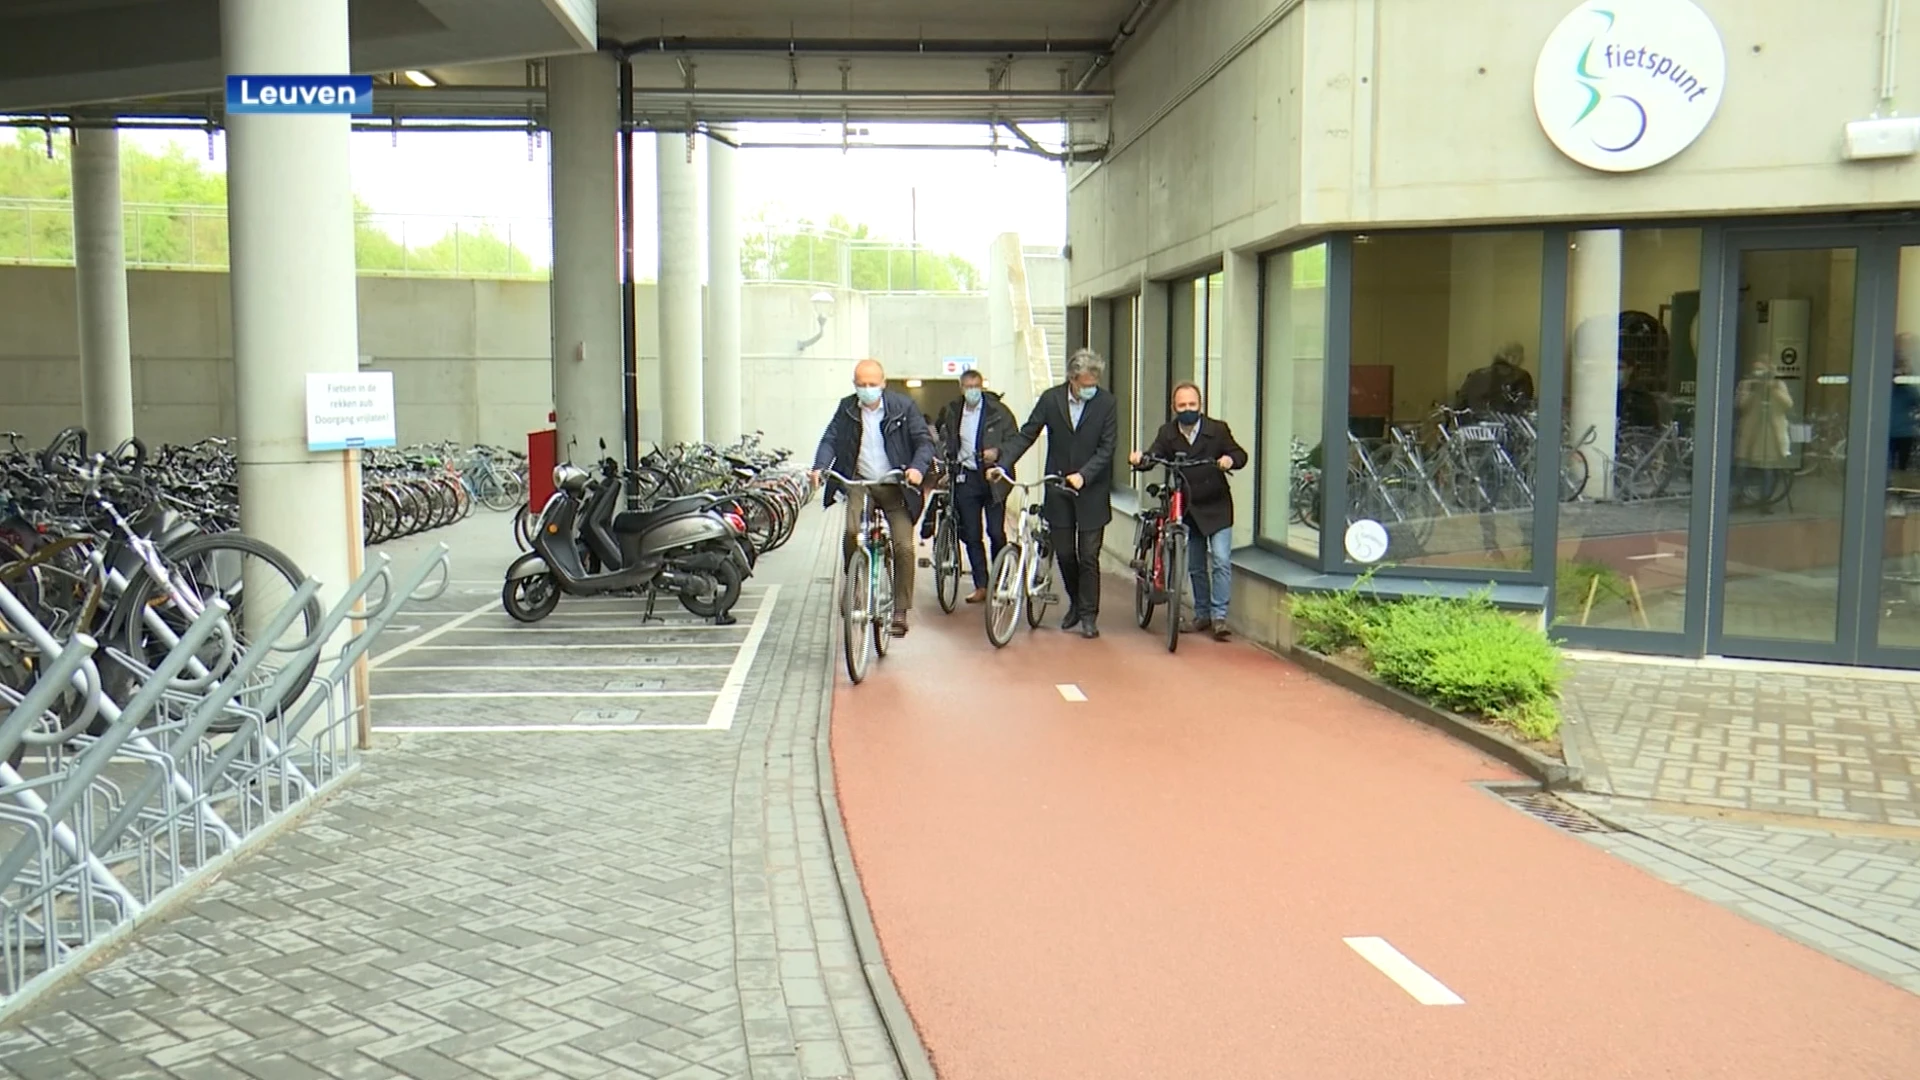 Nieuw Fietspunt van Velo opent op site van Gasthuisberg: "Erg belangrijk, want 1 op 5 werknemers komt met de fiets"